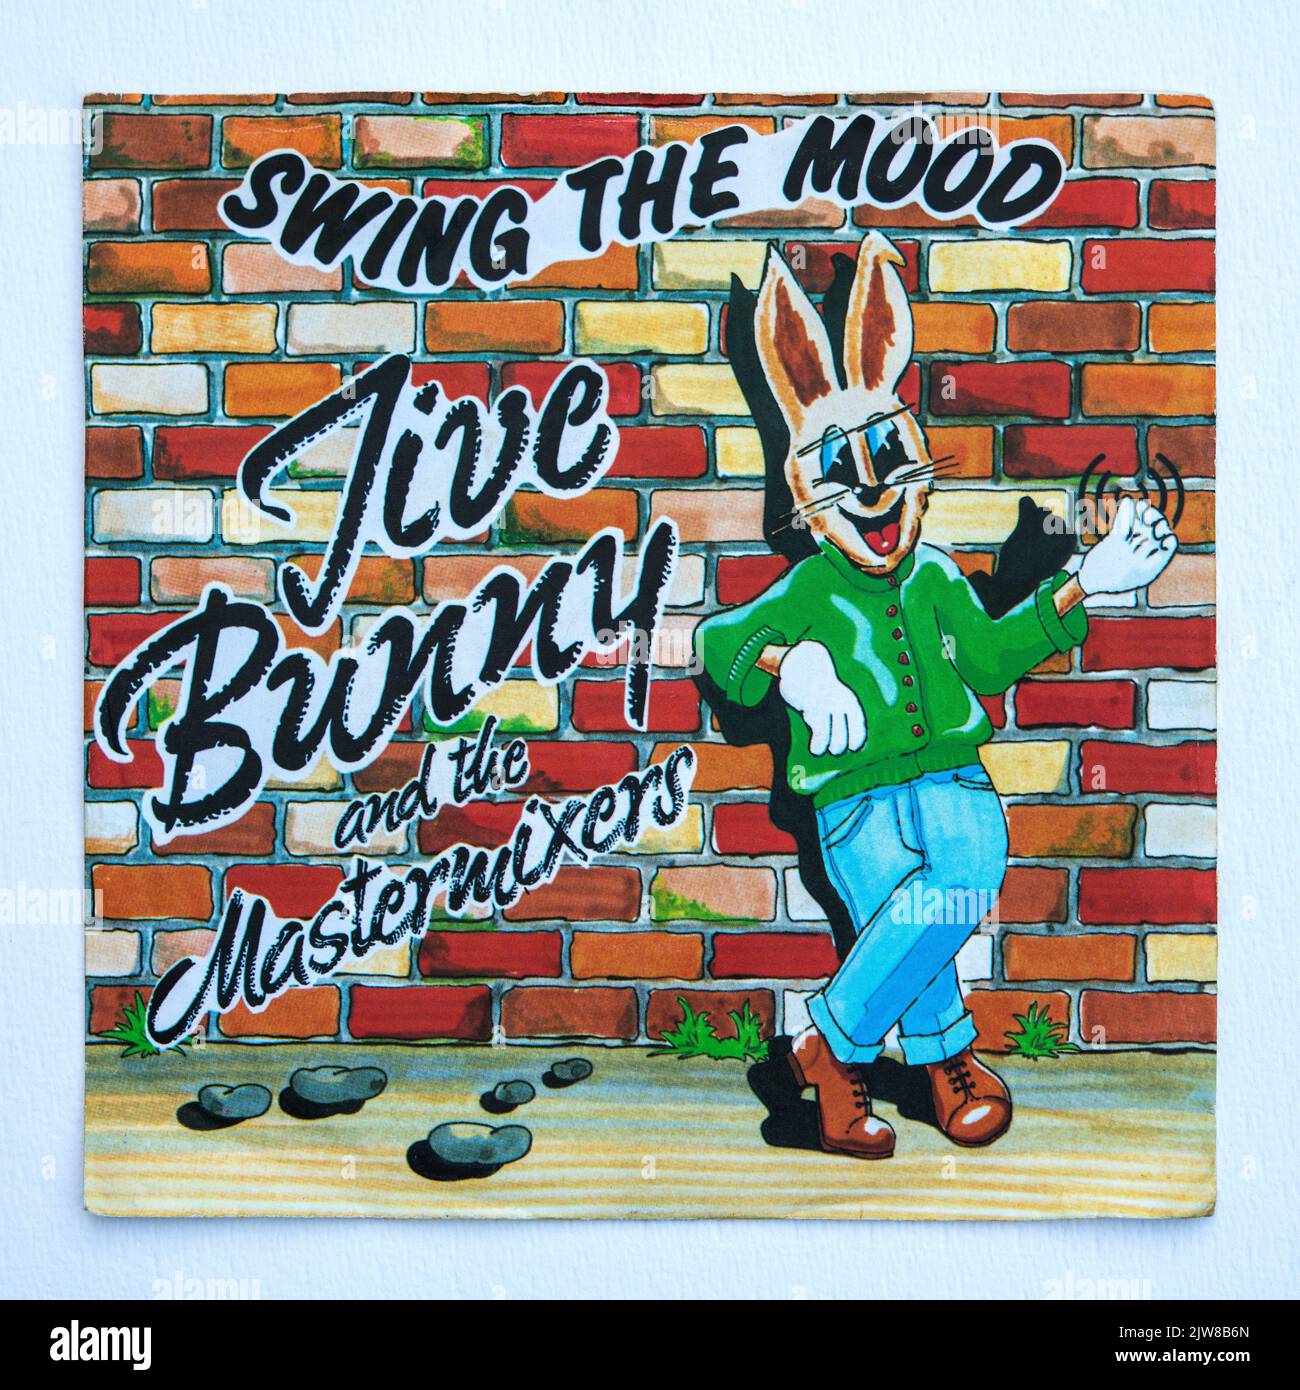 Copertina della versione singola da sette pollici di Swing the Mood di Jive Bunny e dei Mastermixers, rilasciata nel 1989. Foto Stock